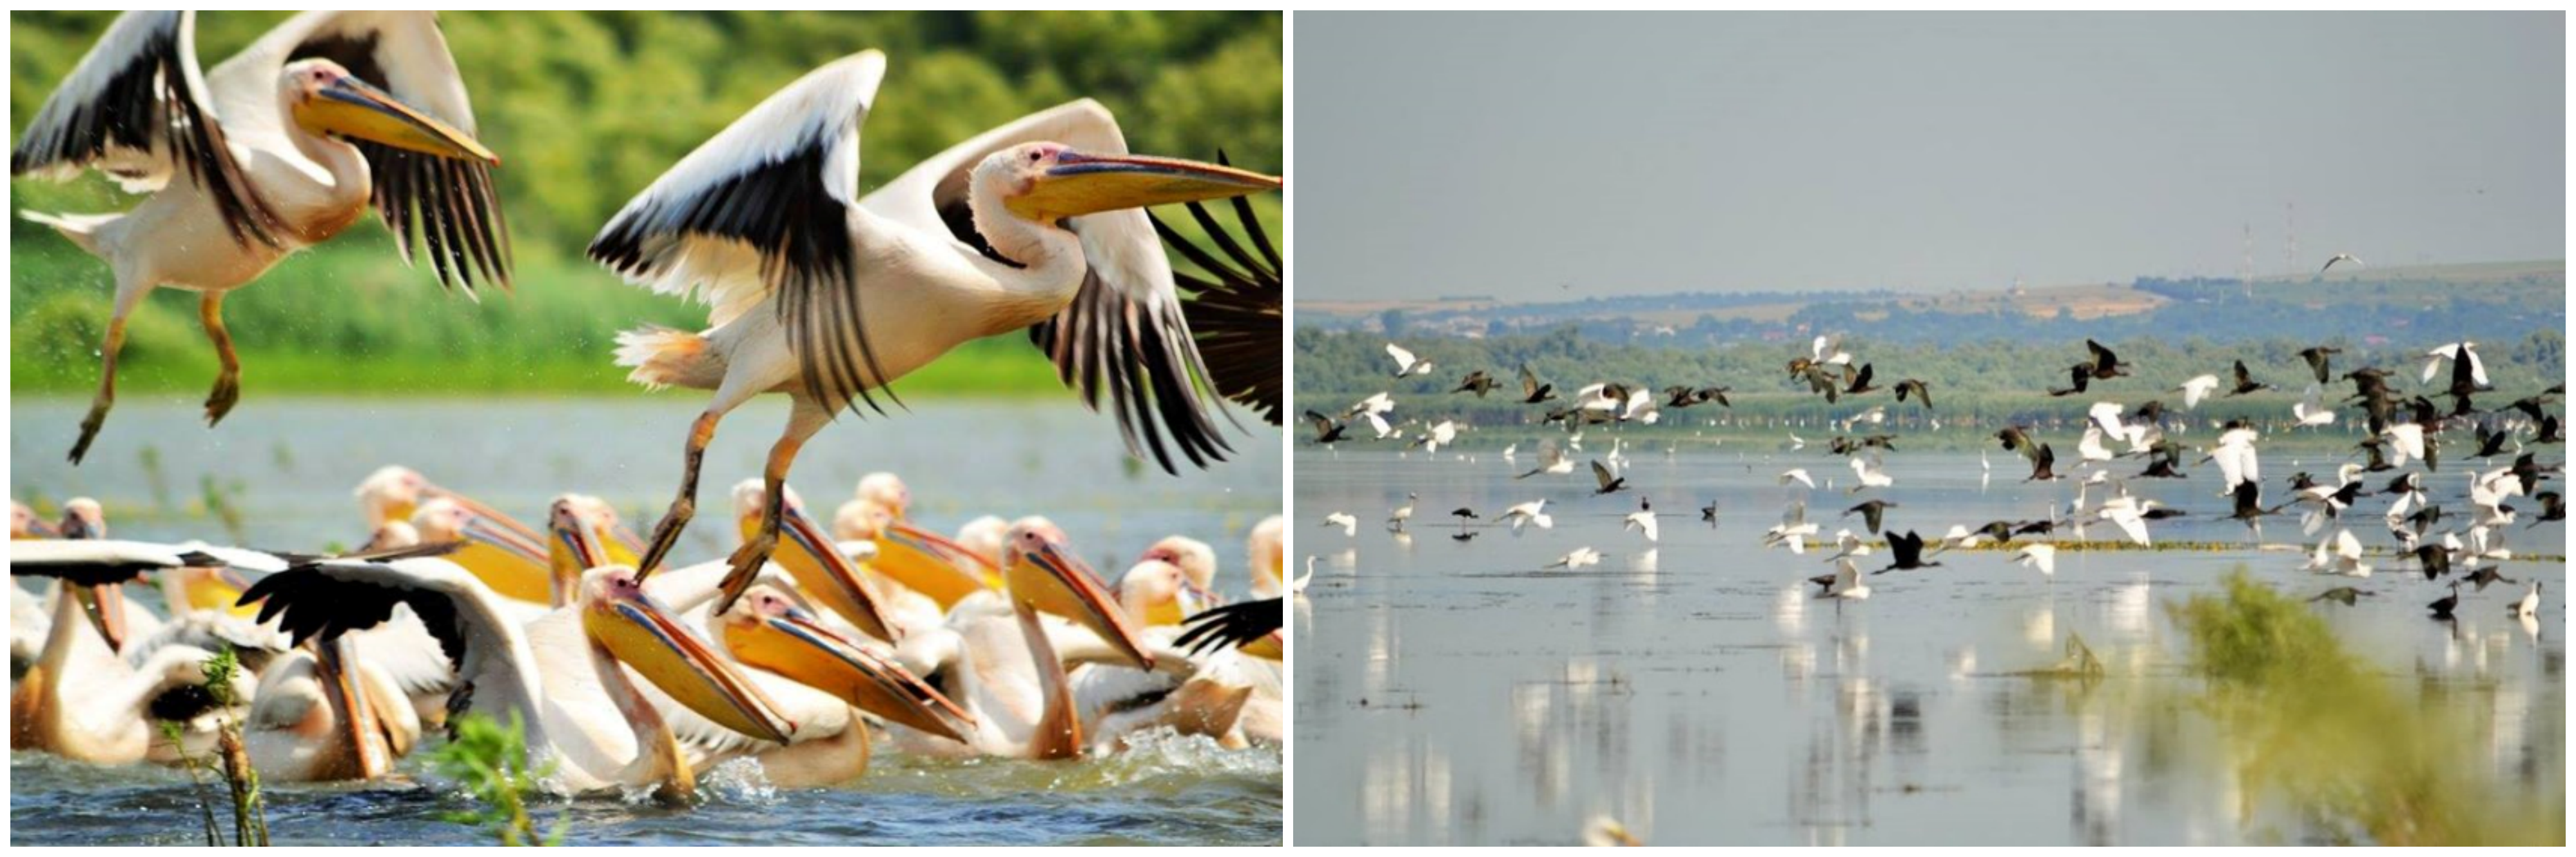 Lacul Beleu  Venirea pelicanilor este un eveniment important pentru localnici, care Ăi admir, Ăn special, la rsrit sau apus de soare, atunci cĂ˘nd miile de pasari brzdeaz cerul.